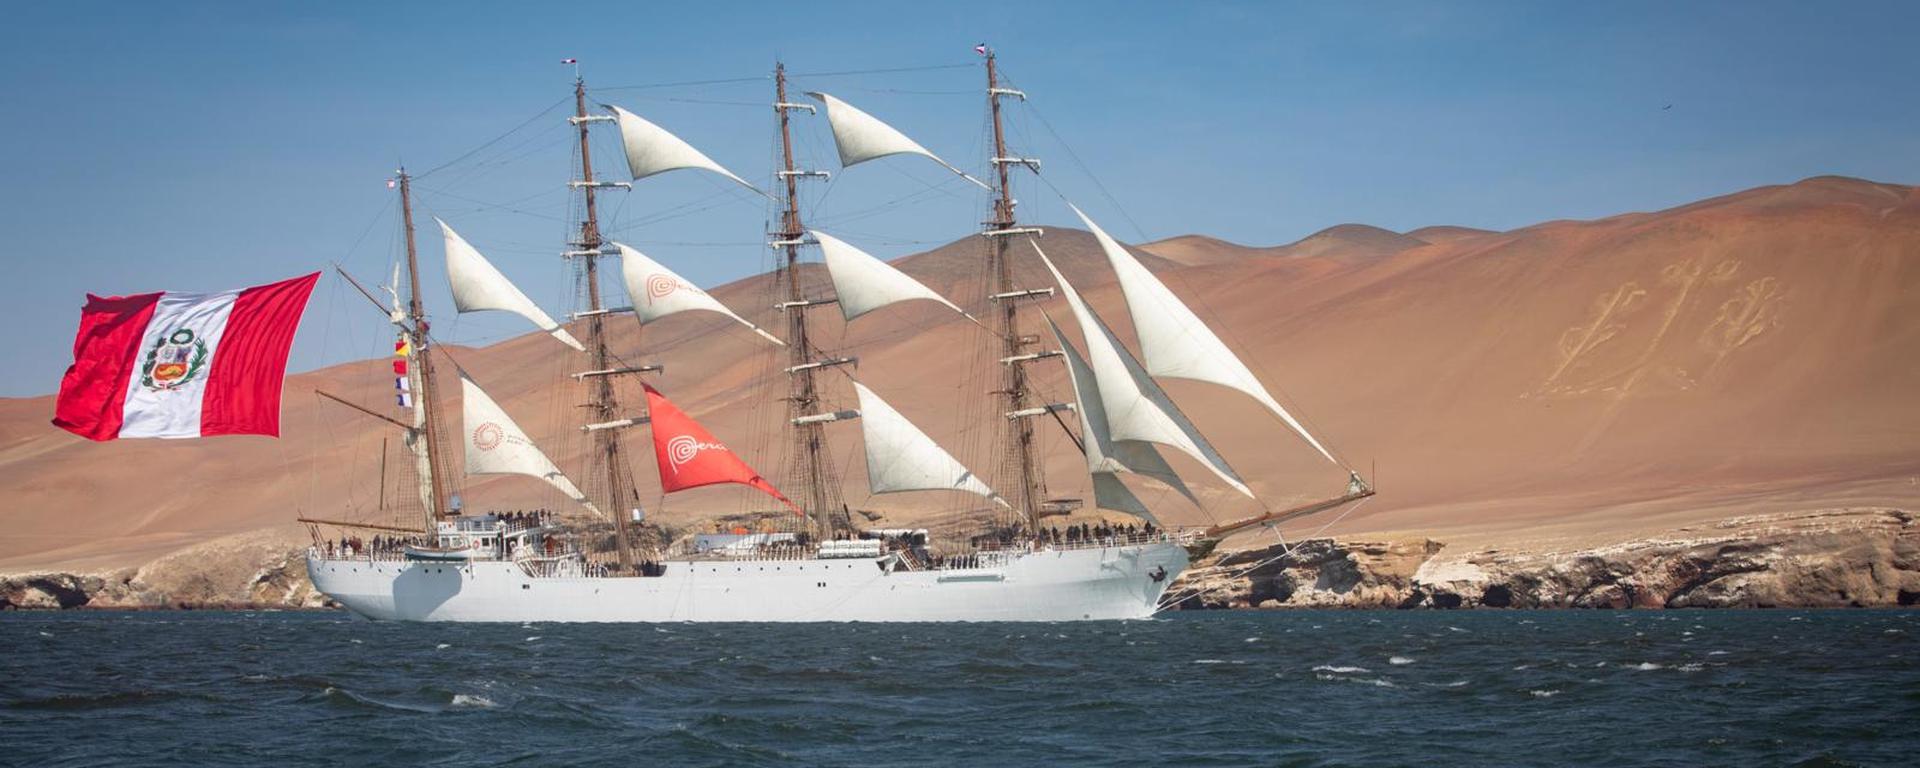 BAP Unión: la fascinante travesía a bordo del histórico navío, desde Paracas al Callao  